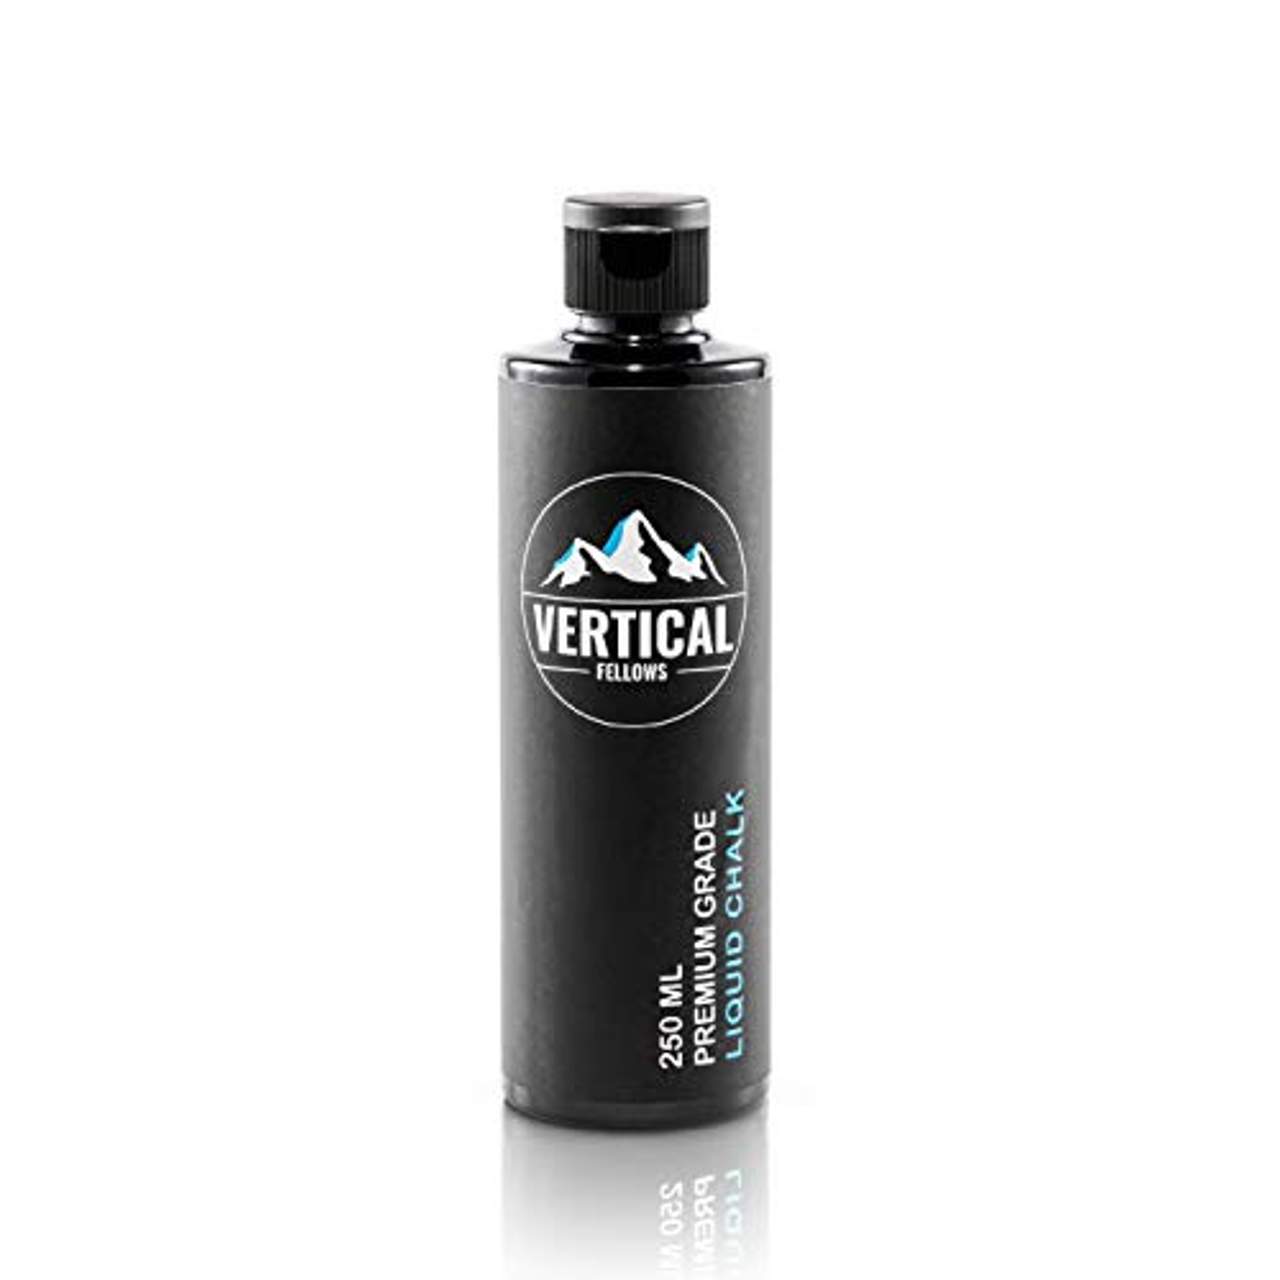 VERTICAL FELLOWS 250ml Liquid Chalk